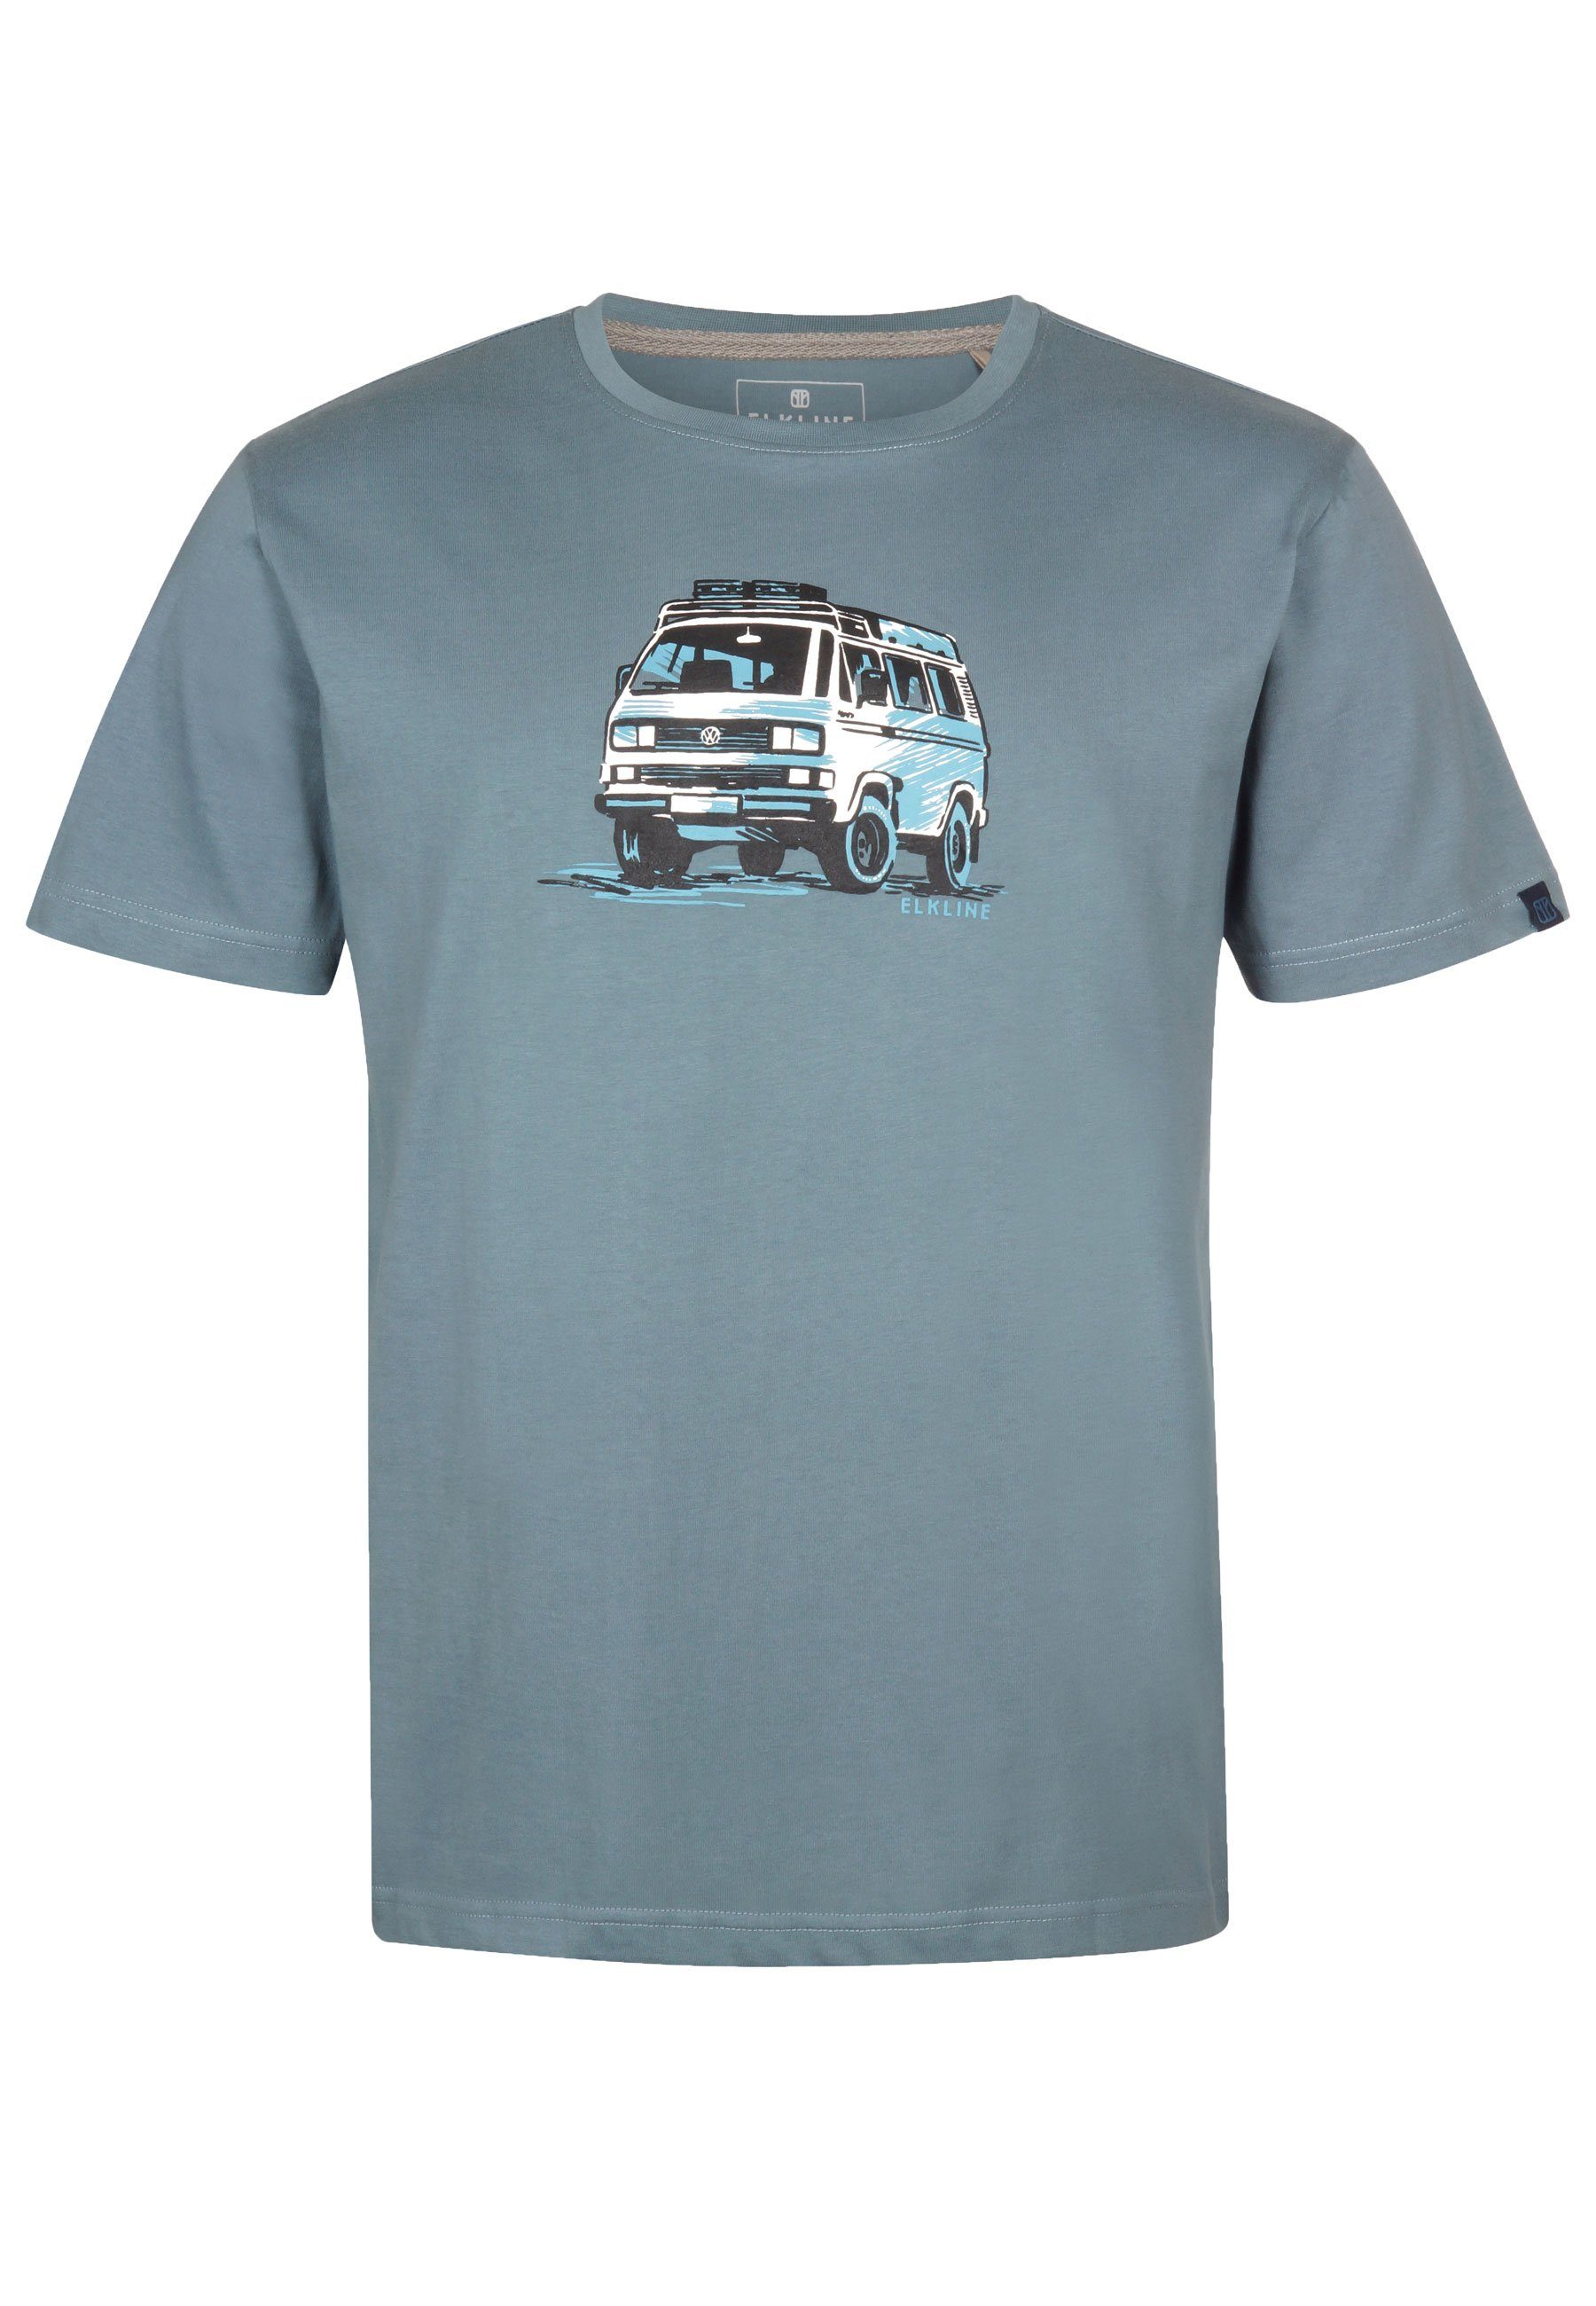 Elkline T-Shirt Gassenhauer VW Retro Bulli Brust Print goblinblue